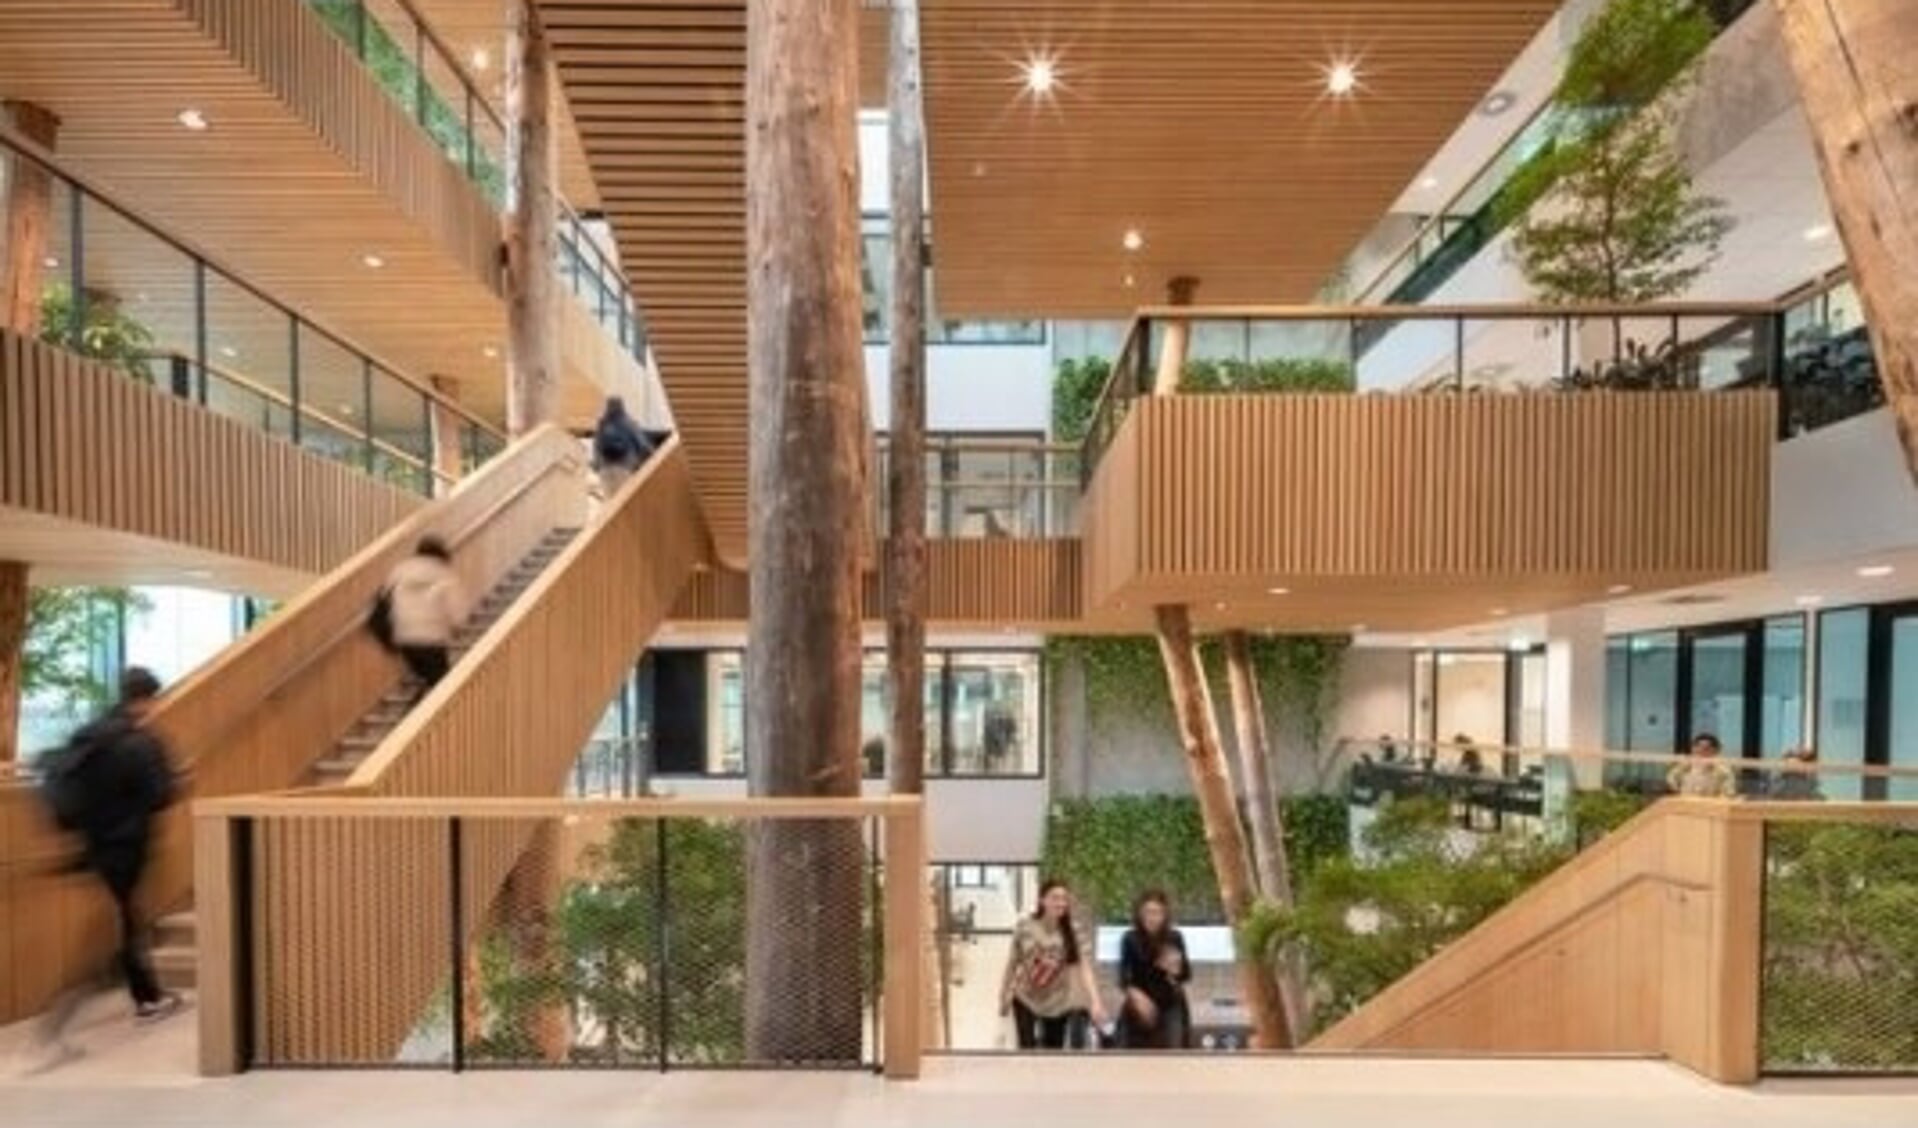 Kenmerkend zijn de groene studieomgeving en de houten boomhut in het atrium. Foto: Aiste Rakauskaite